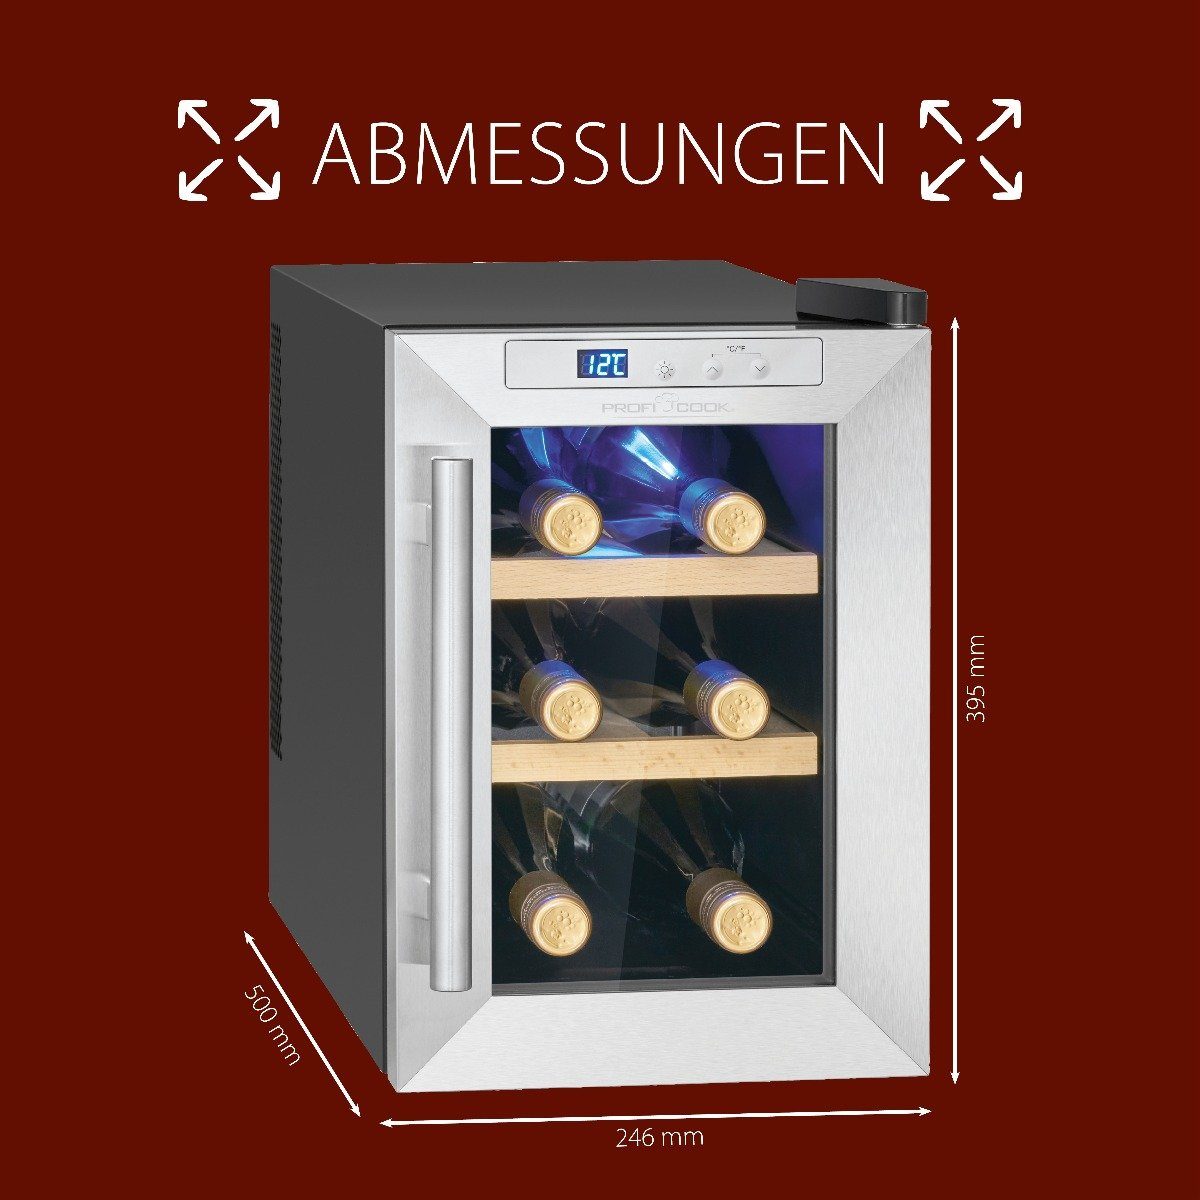 breit, cm PC-WK 1231, 39.5 hoch, 6 24.6 cm für Flaschen Weinkühlschrank Getränkekühlschrank schwarz ProfiCook